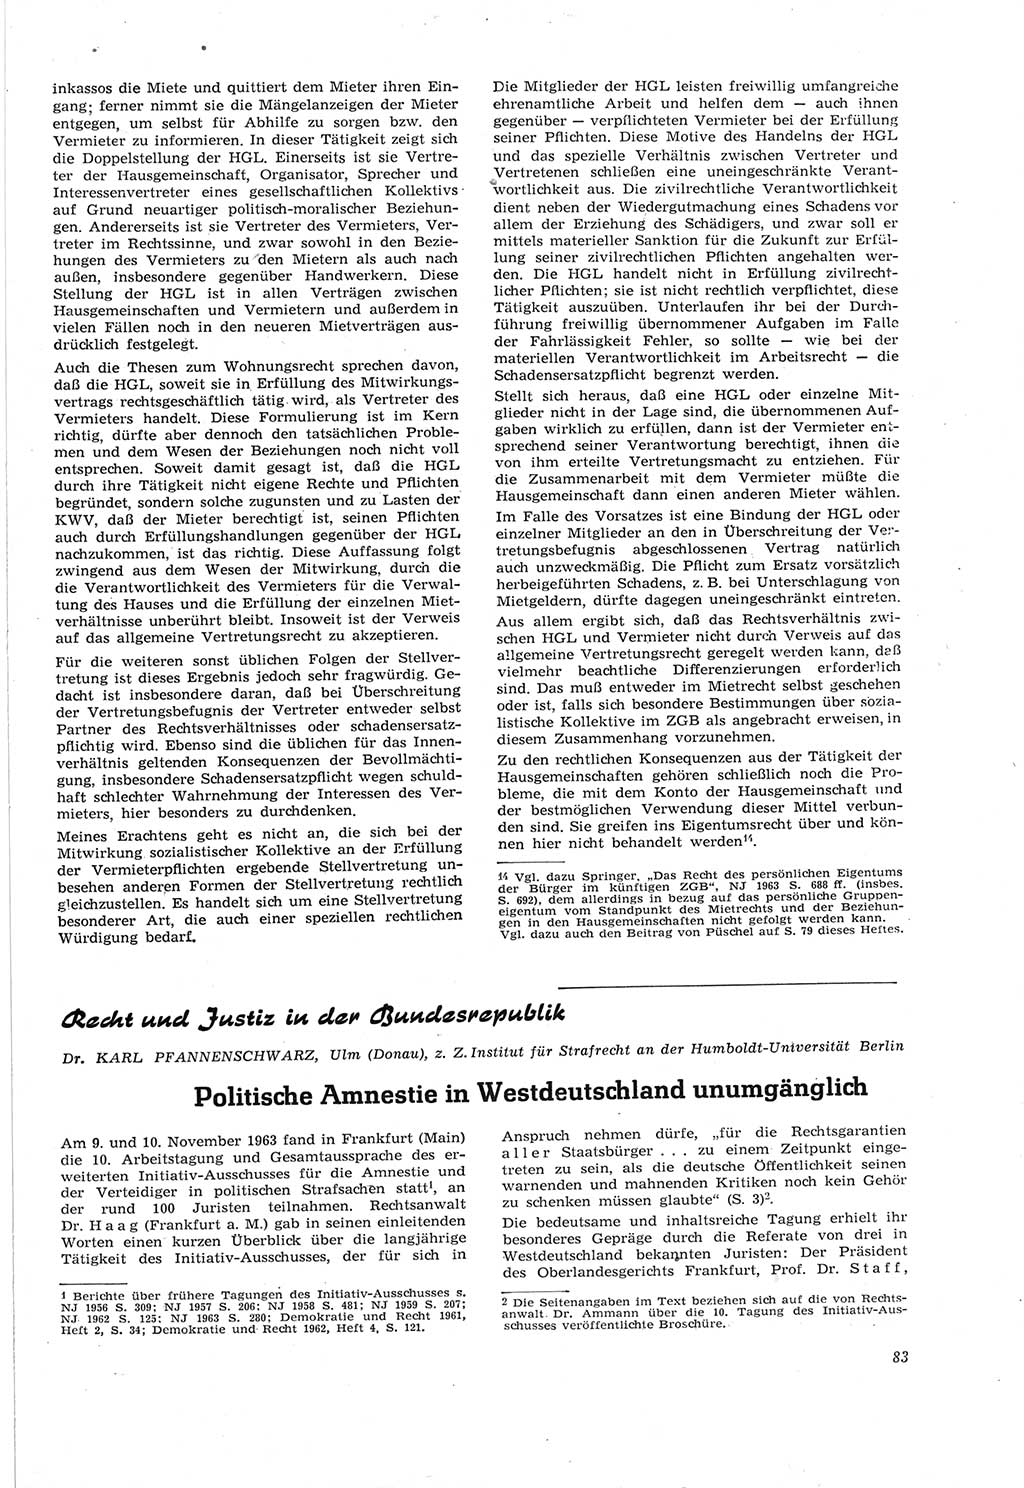 Neue Justiz (NJ), Zeitschrift für Recht und Rechtswissenschaft [Deutsche Demokratische Republik (DDR)], 18. Jahrgang 1964, Seite 83 (NJ DDR 1964, S. 83)